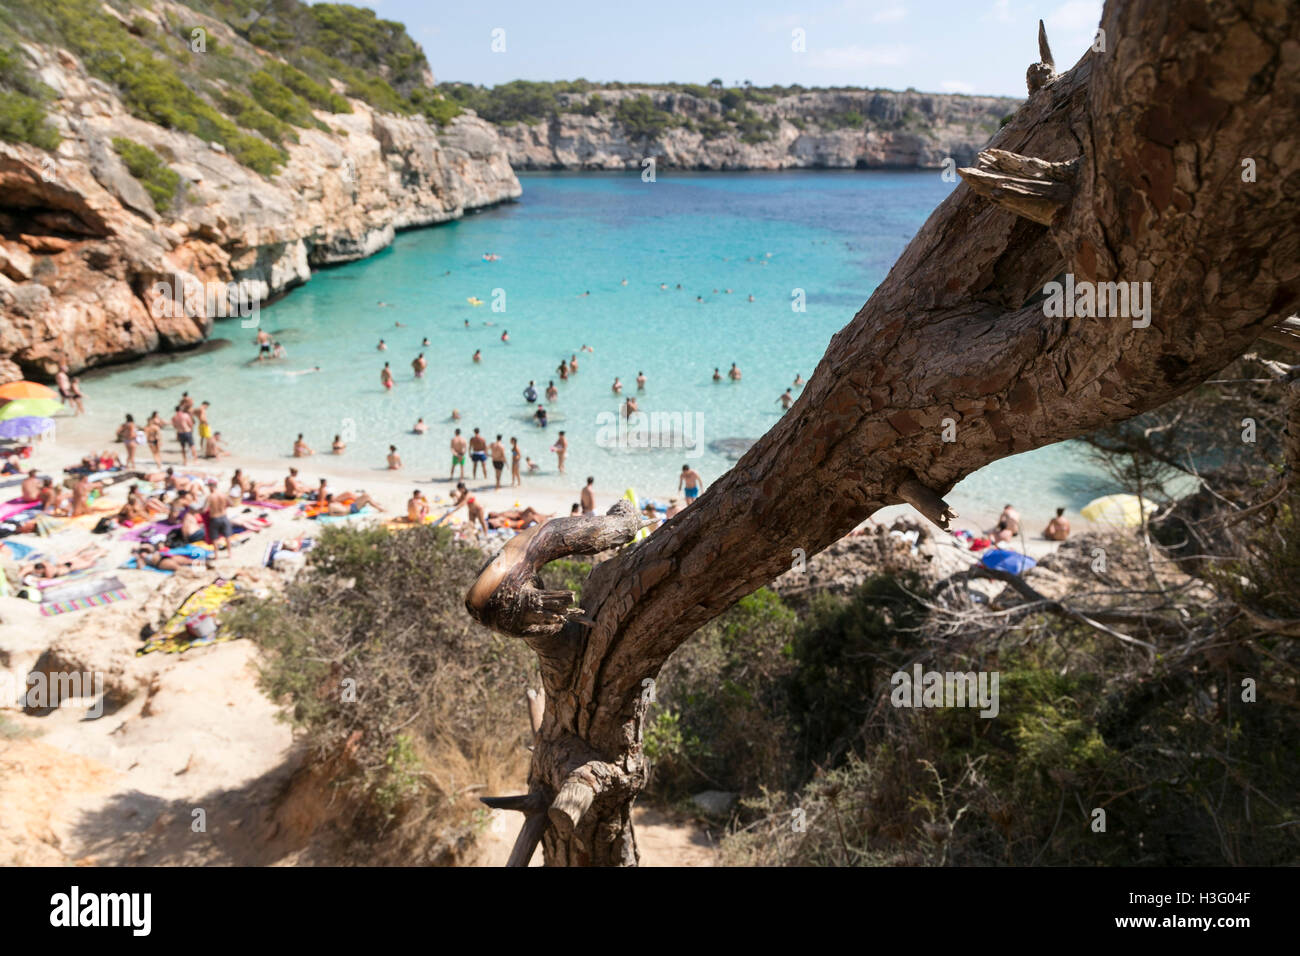 Paradisiaca spiaggia di chiara e acqua cristallina in Mallorca Foto Stock